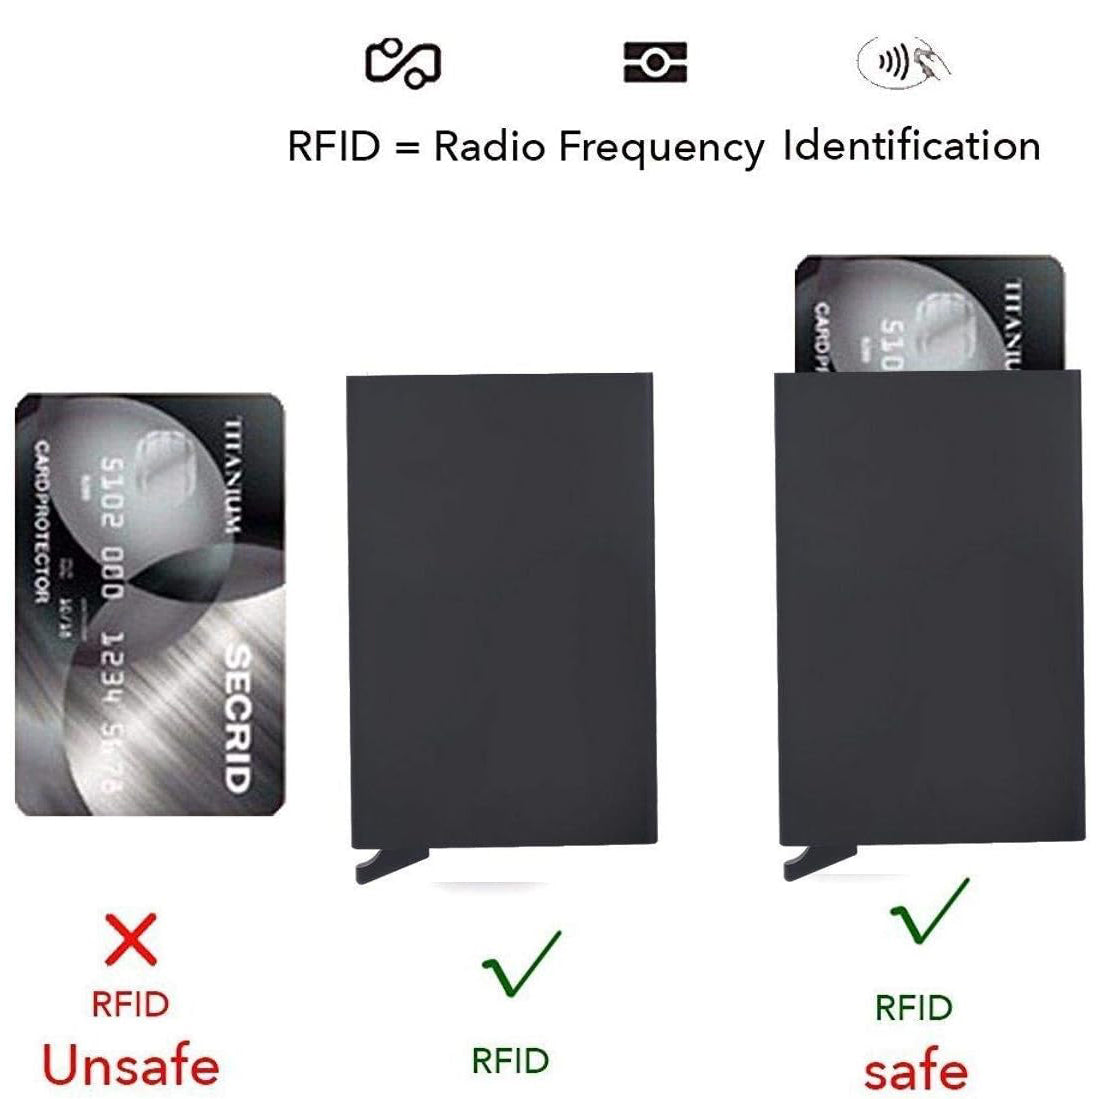 حامل بطاقات الومنيوم  كراتة مع تقنية RFID  - حامل بطاقات الائتمان بتصميم بسيط ورفيع للرجال والنساء، حافظة معدنية صغيرة تحجب تقنية تحديد الهوية بموجات الراديو بتقنية RFID | اسود|